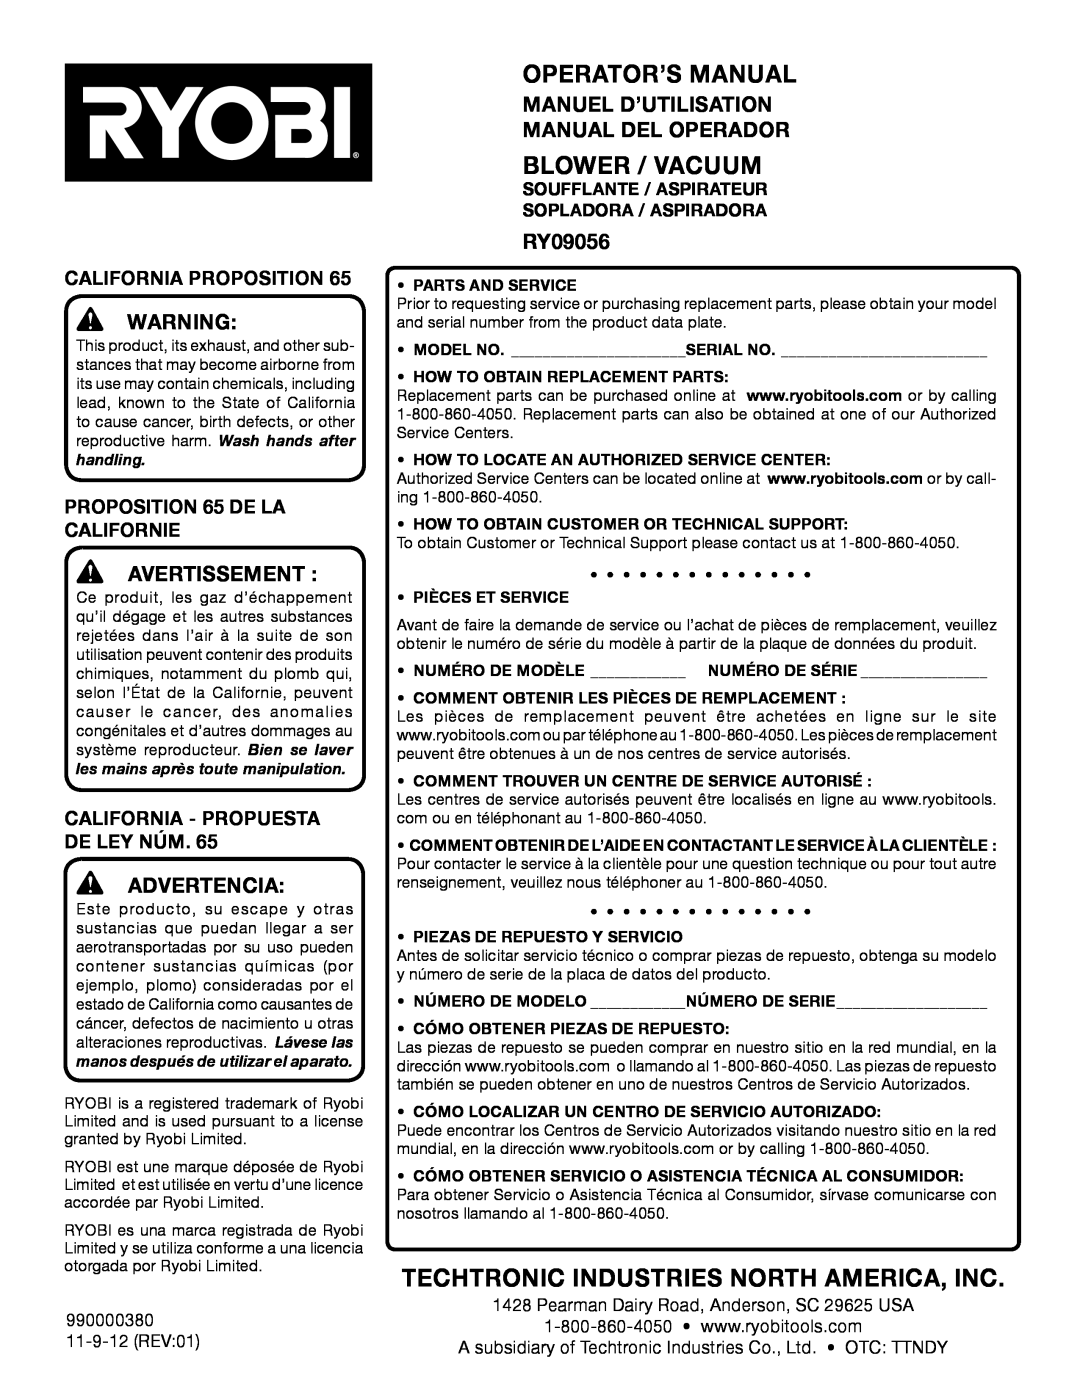 Ryobi RY09056 Manuel D’Utilisation Manual Del Operador, California Proposition, Proposition 65 de la Californie 